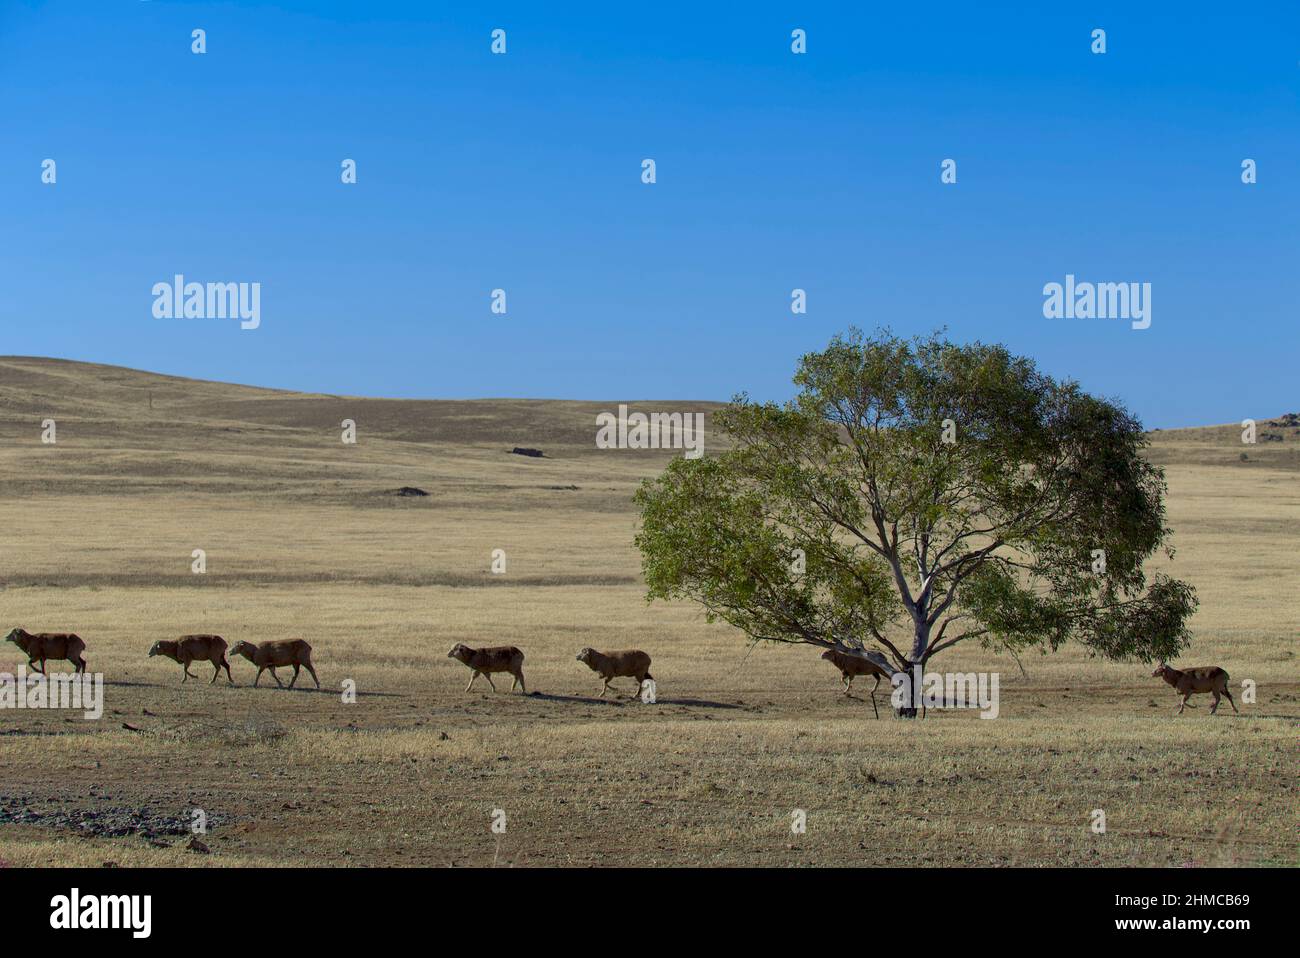 Les moutons qui marchent dans la sécheresse ont affecté le pâturage du paysage doré près d'Orroroo en Australie méridionale Banque D'Images